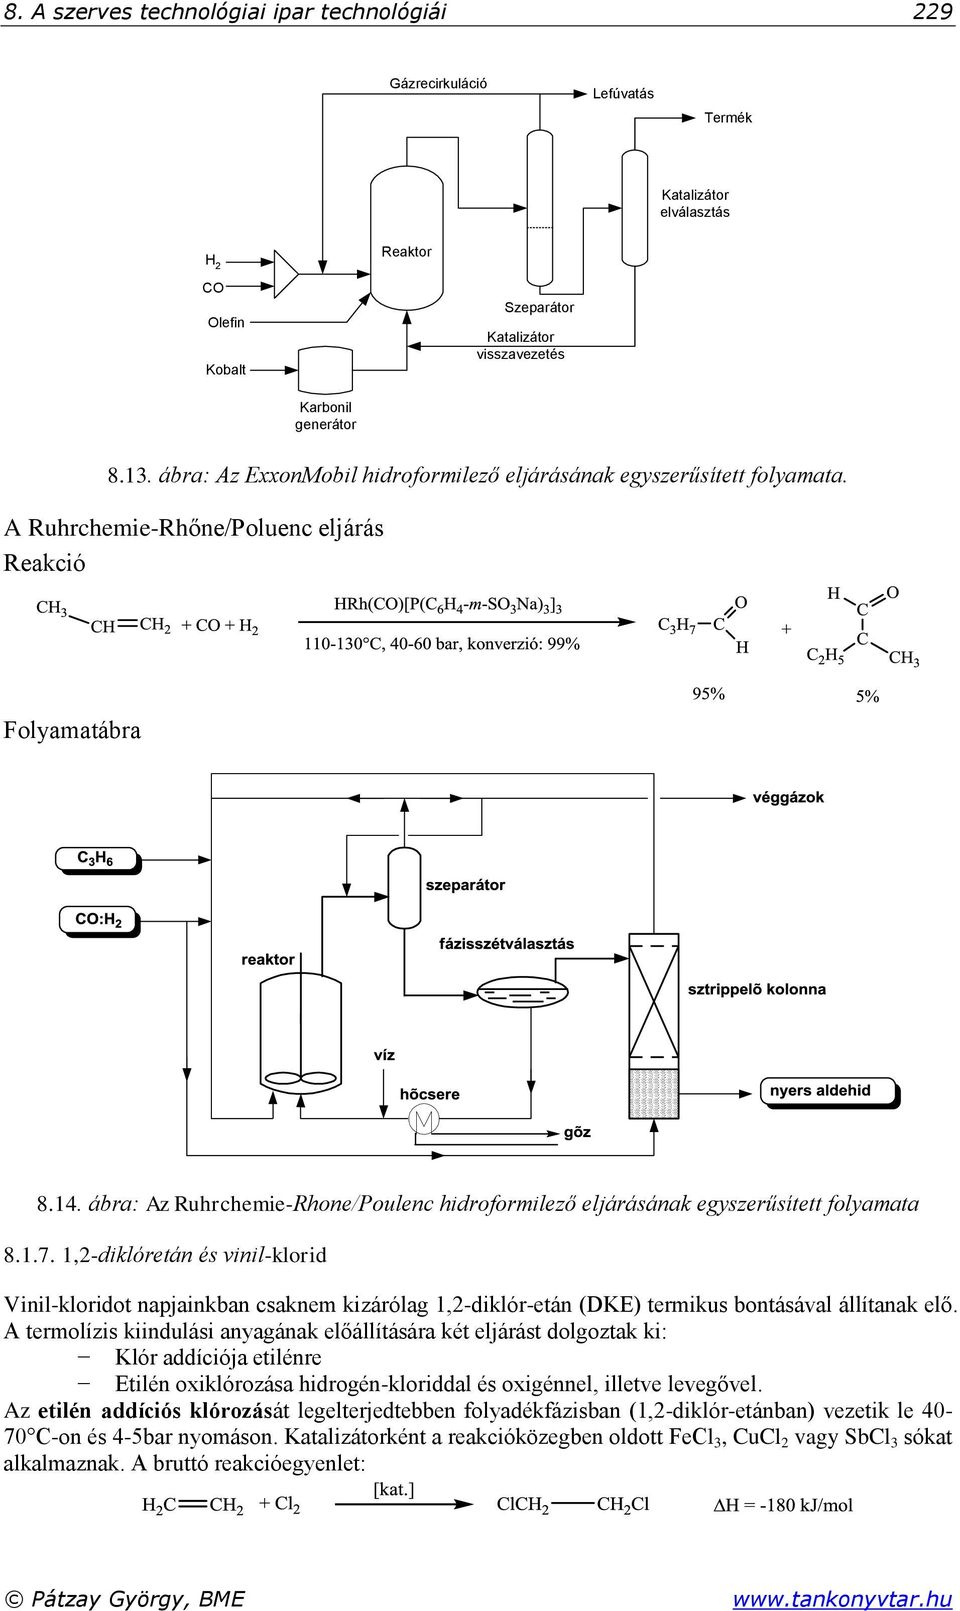 ábra: Az Ruhrchemie-Rhone/Poulenc hidroformilező eljárásának egyszerűsített folyamata 8.1.7.